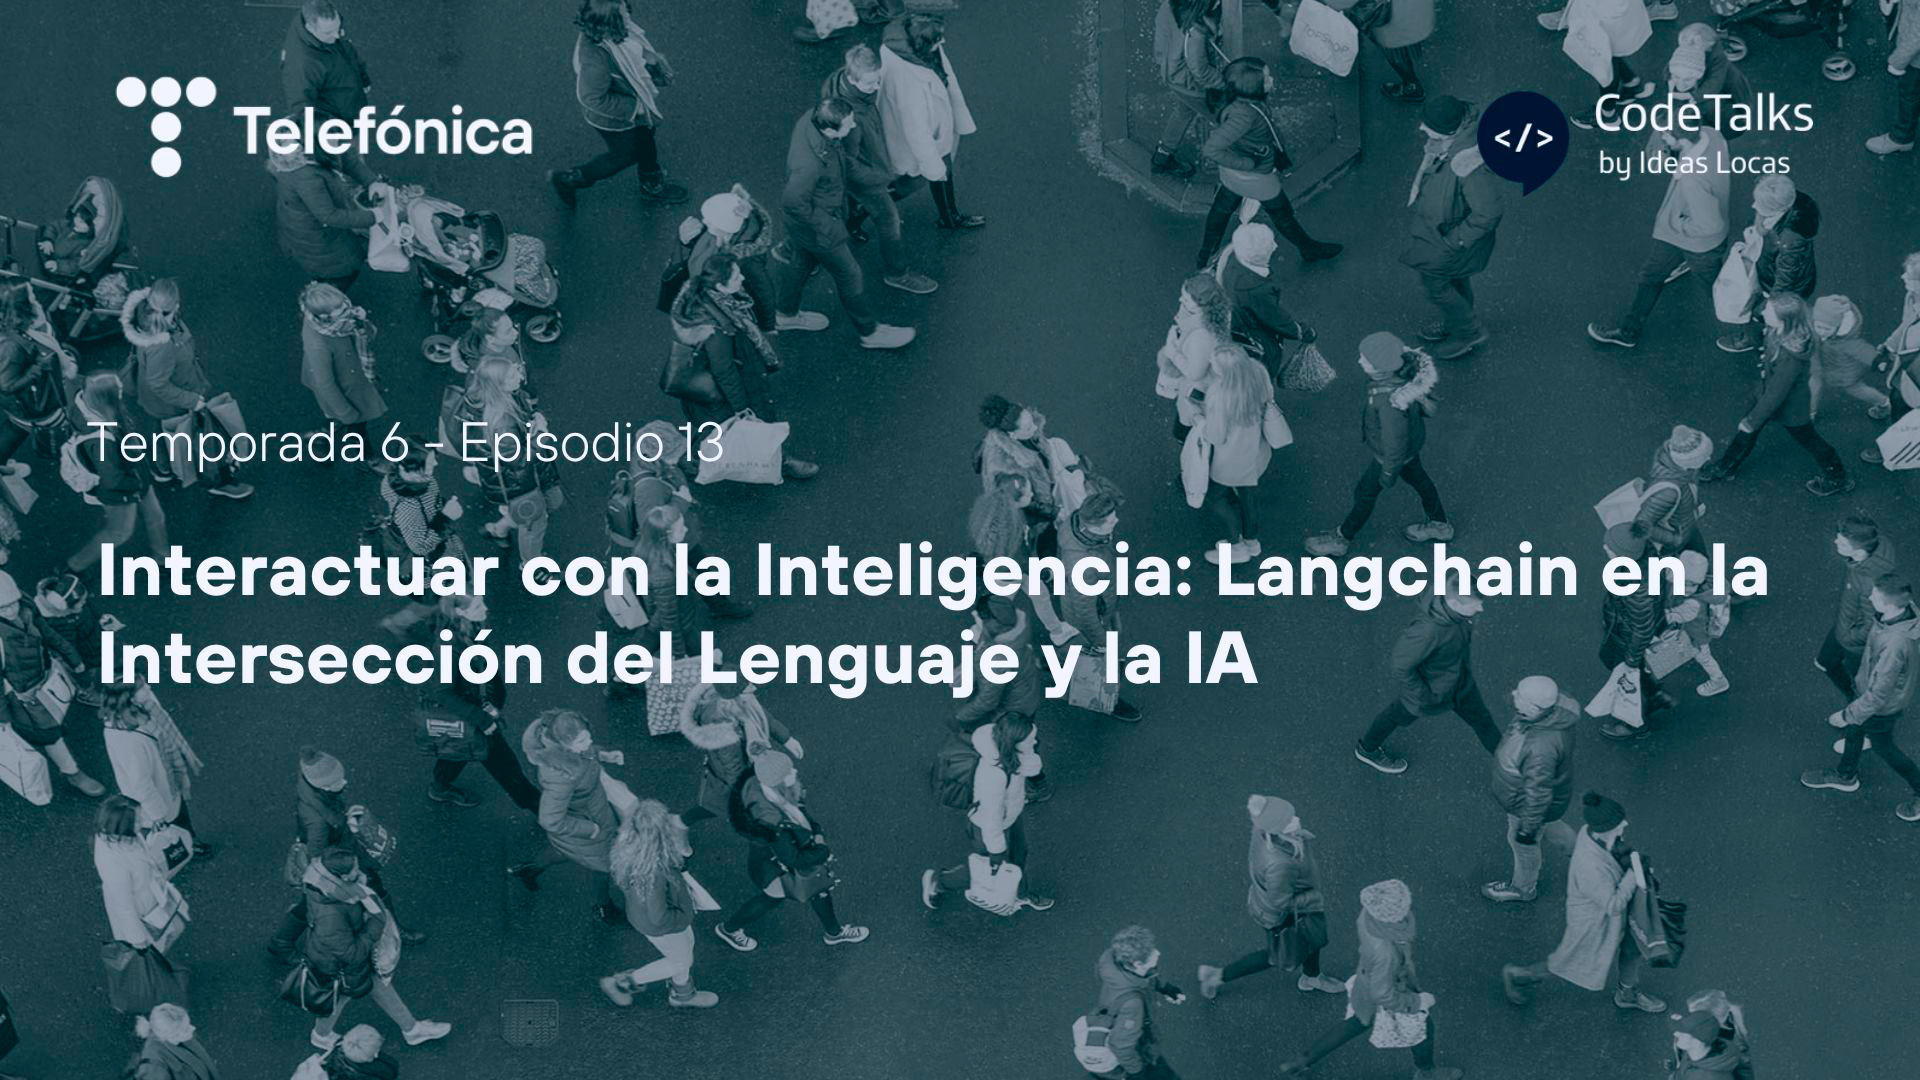 Interactuar con la Inteligencia: Langchain en la Intersección del Lenguaje y la IA